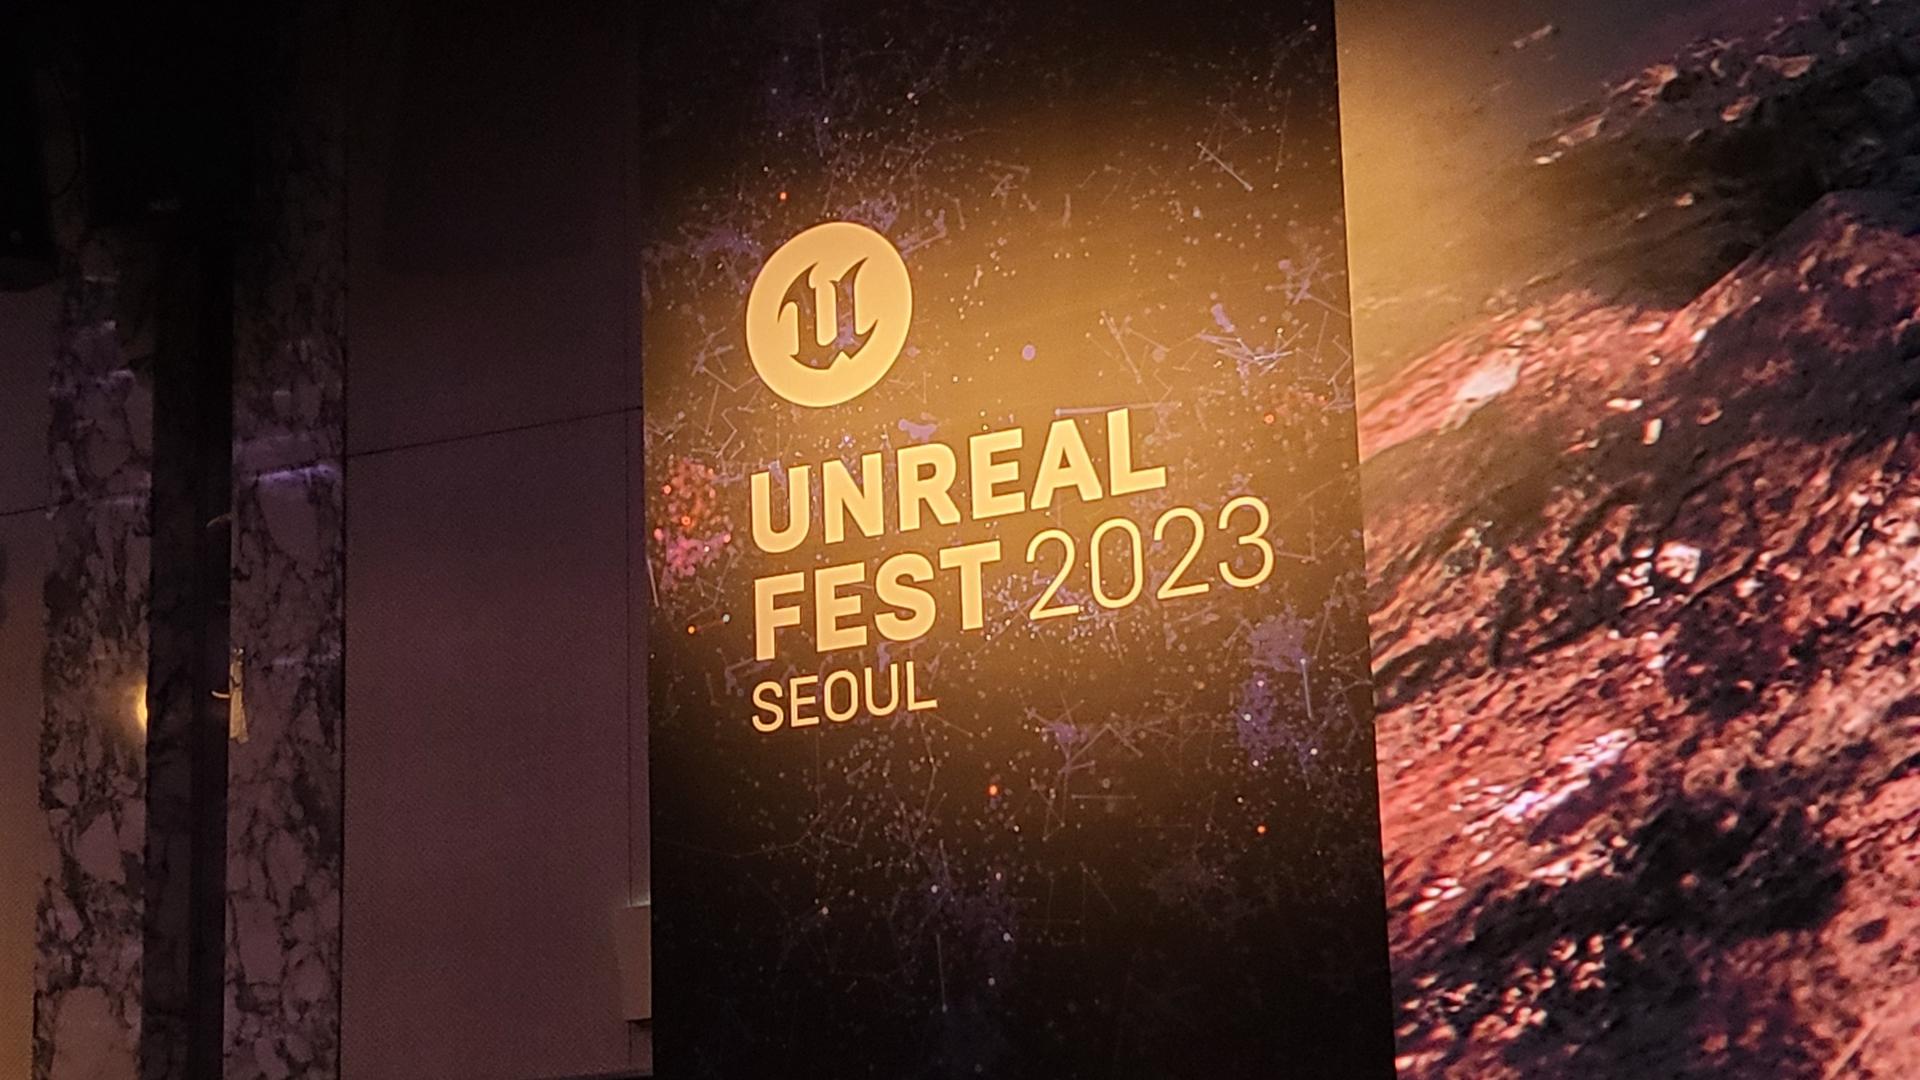 Unreal Fest 2023 Seoul 갔다 왔습니다.